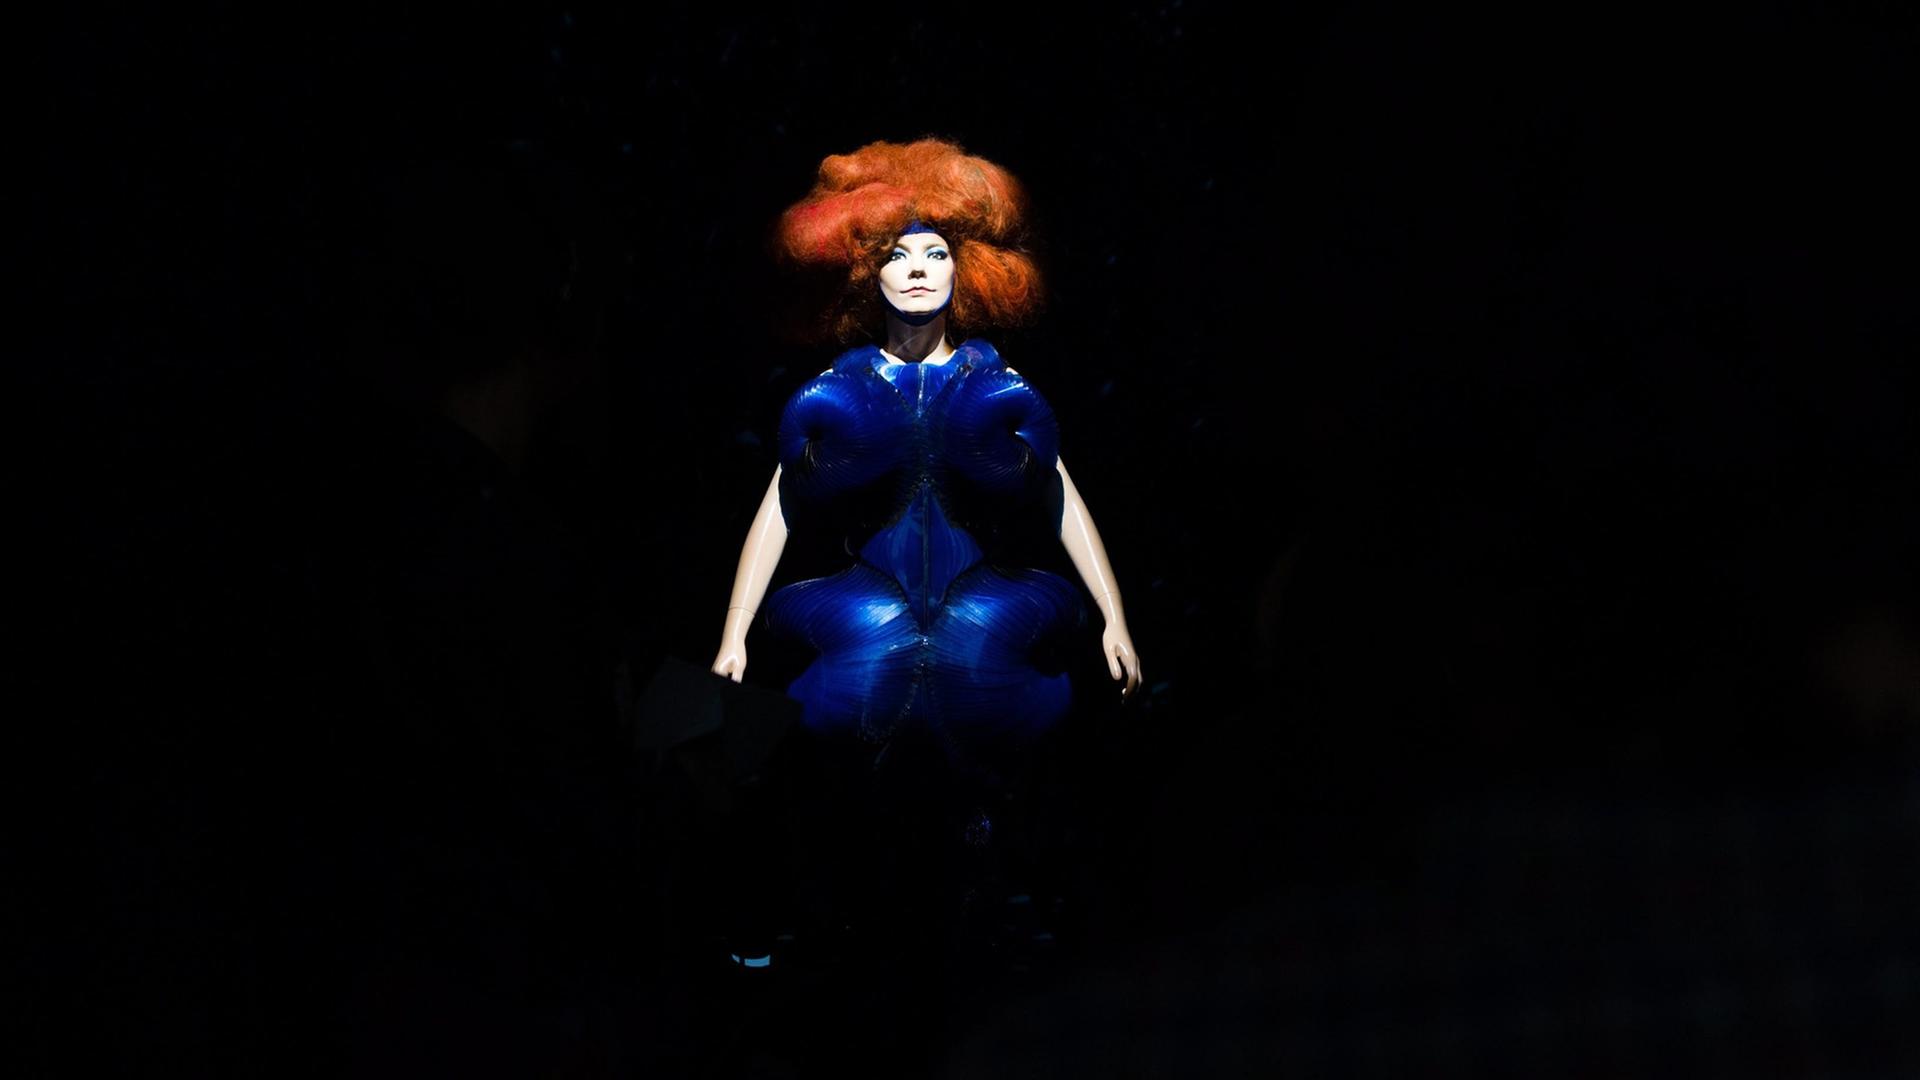 Die Ausstellung "Björk" im Museum of Modern Art in New York am 3.3.2015.